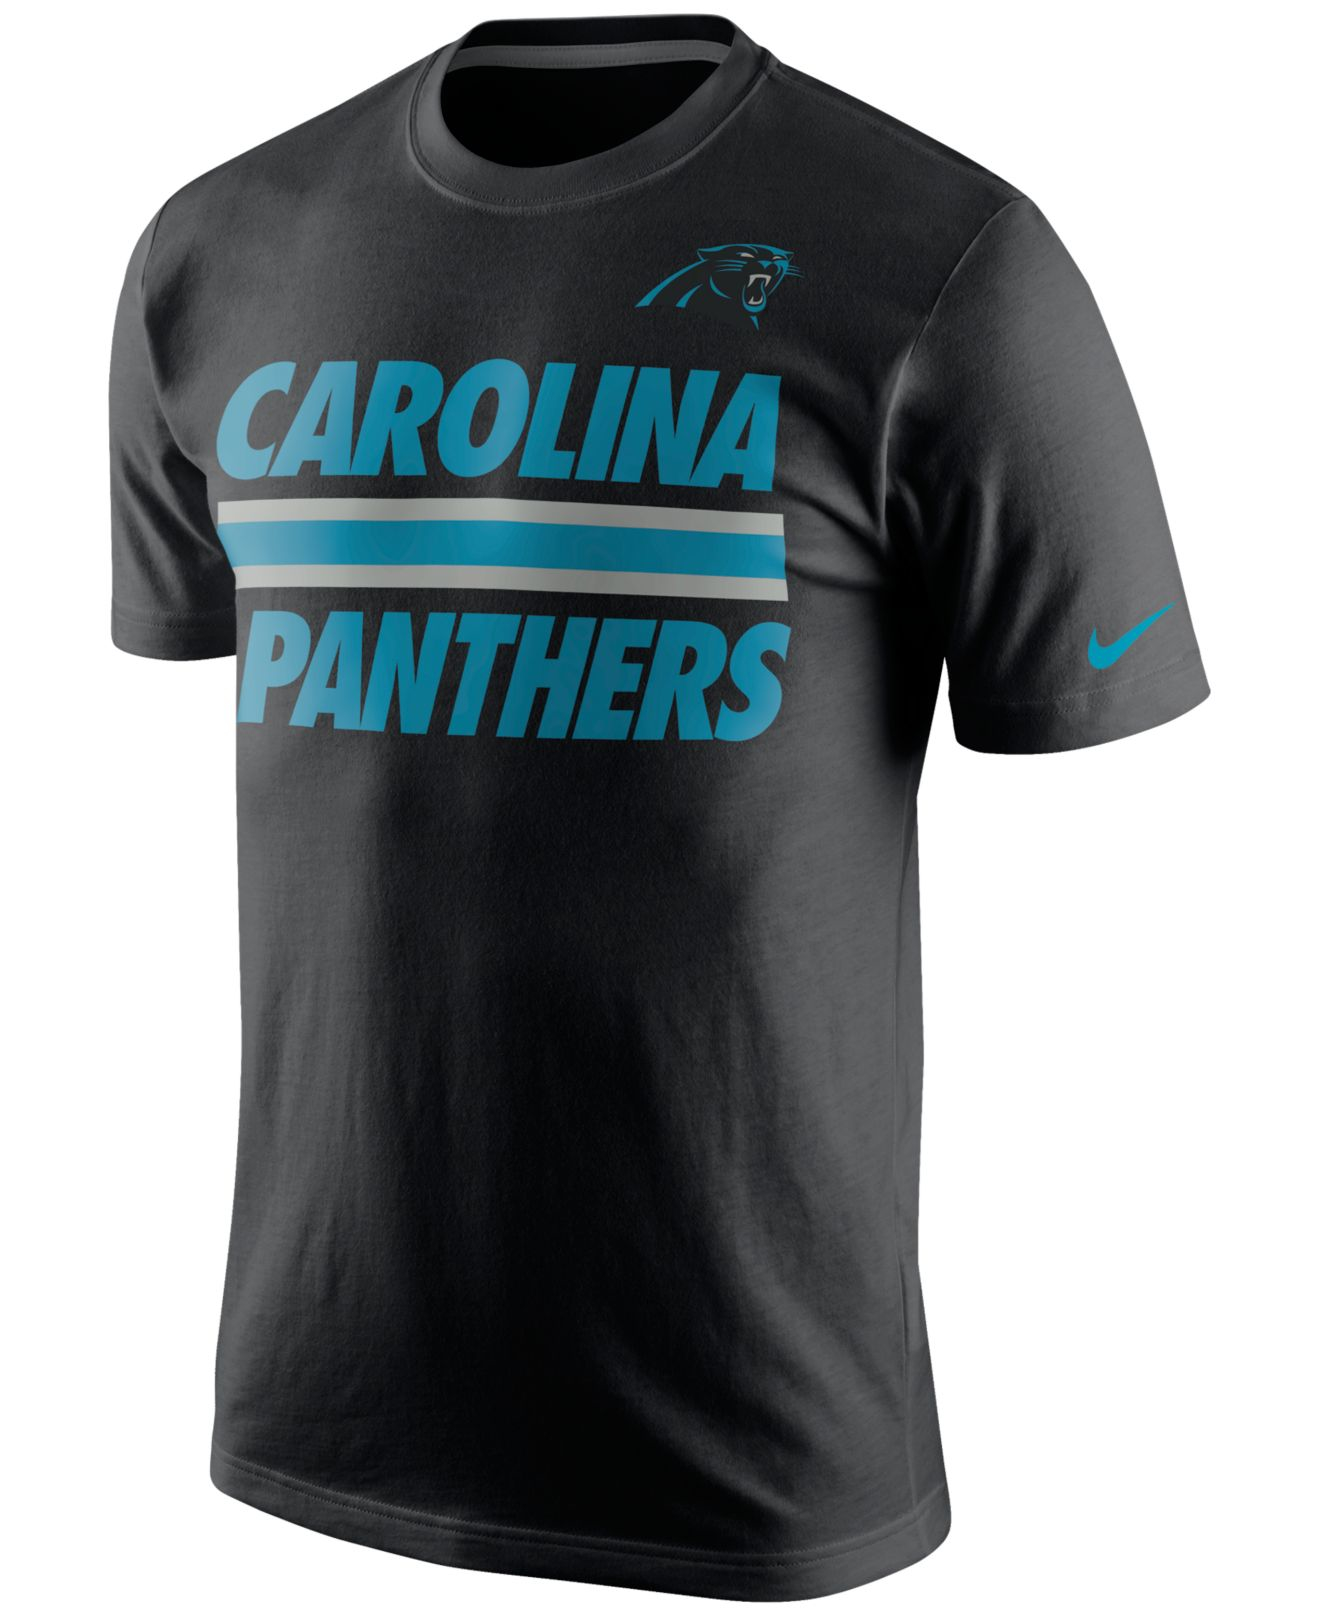 Lyst - Nike Men's Carolina Panthers Team Stripe T-shirt in Black for Men